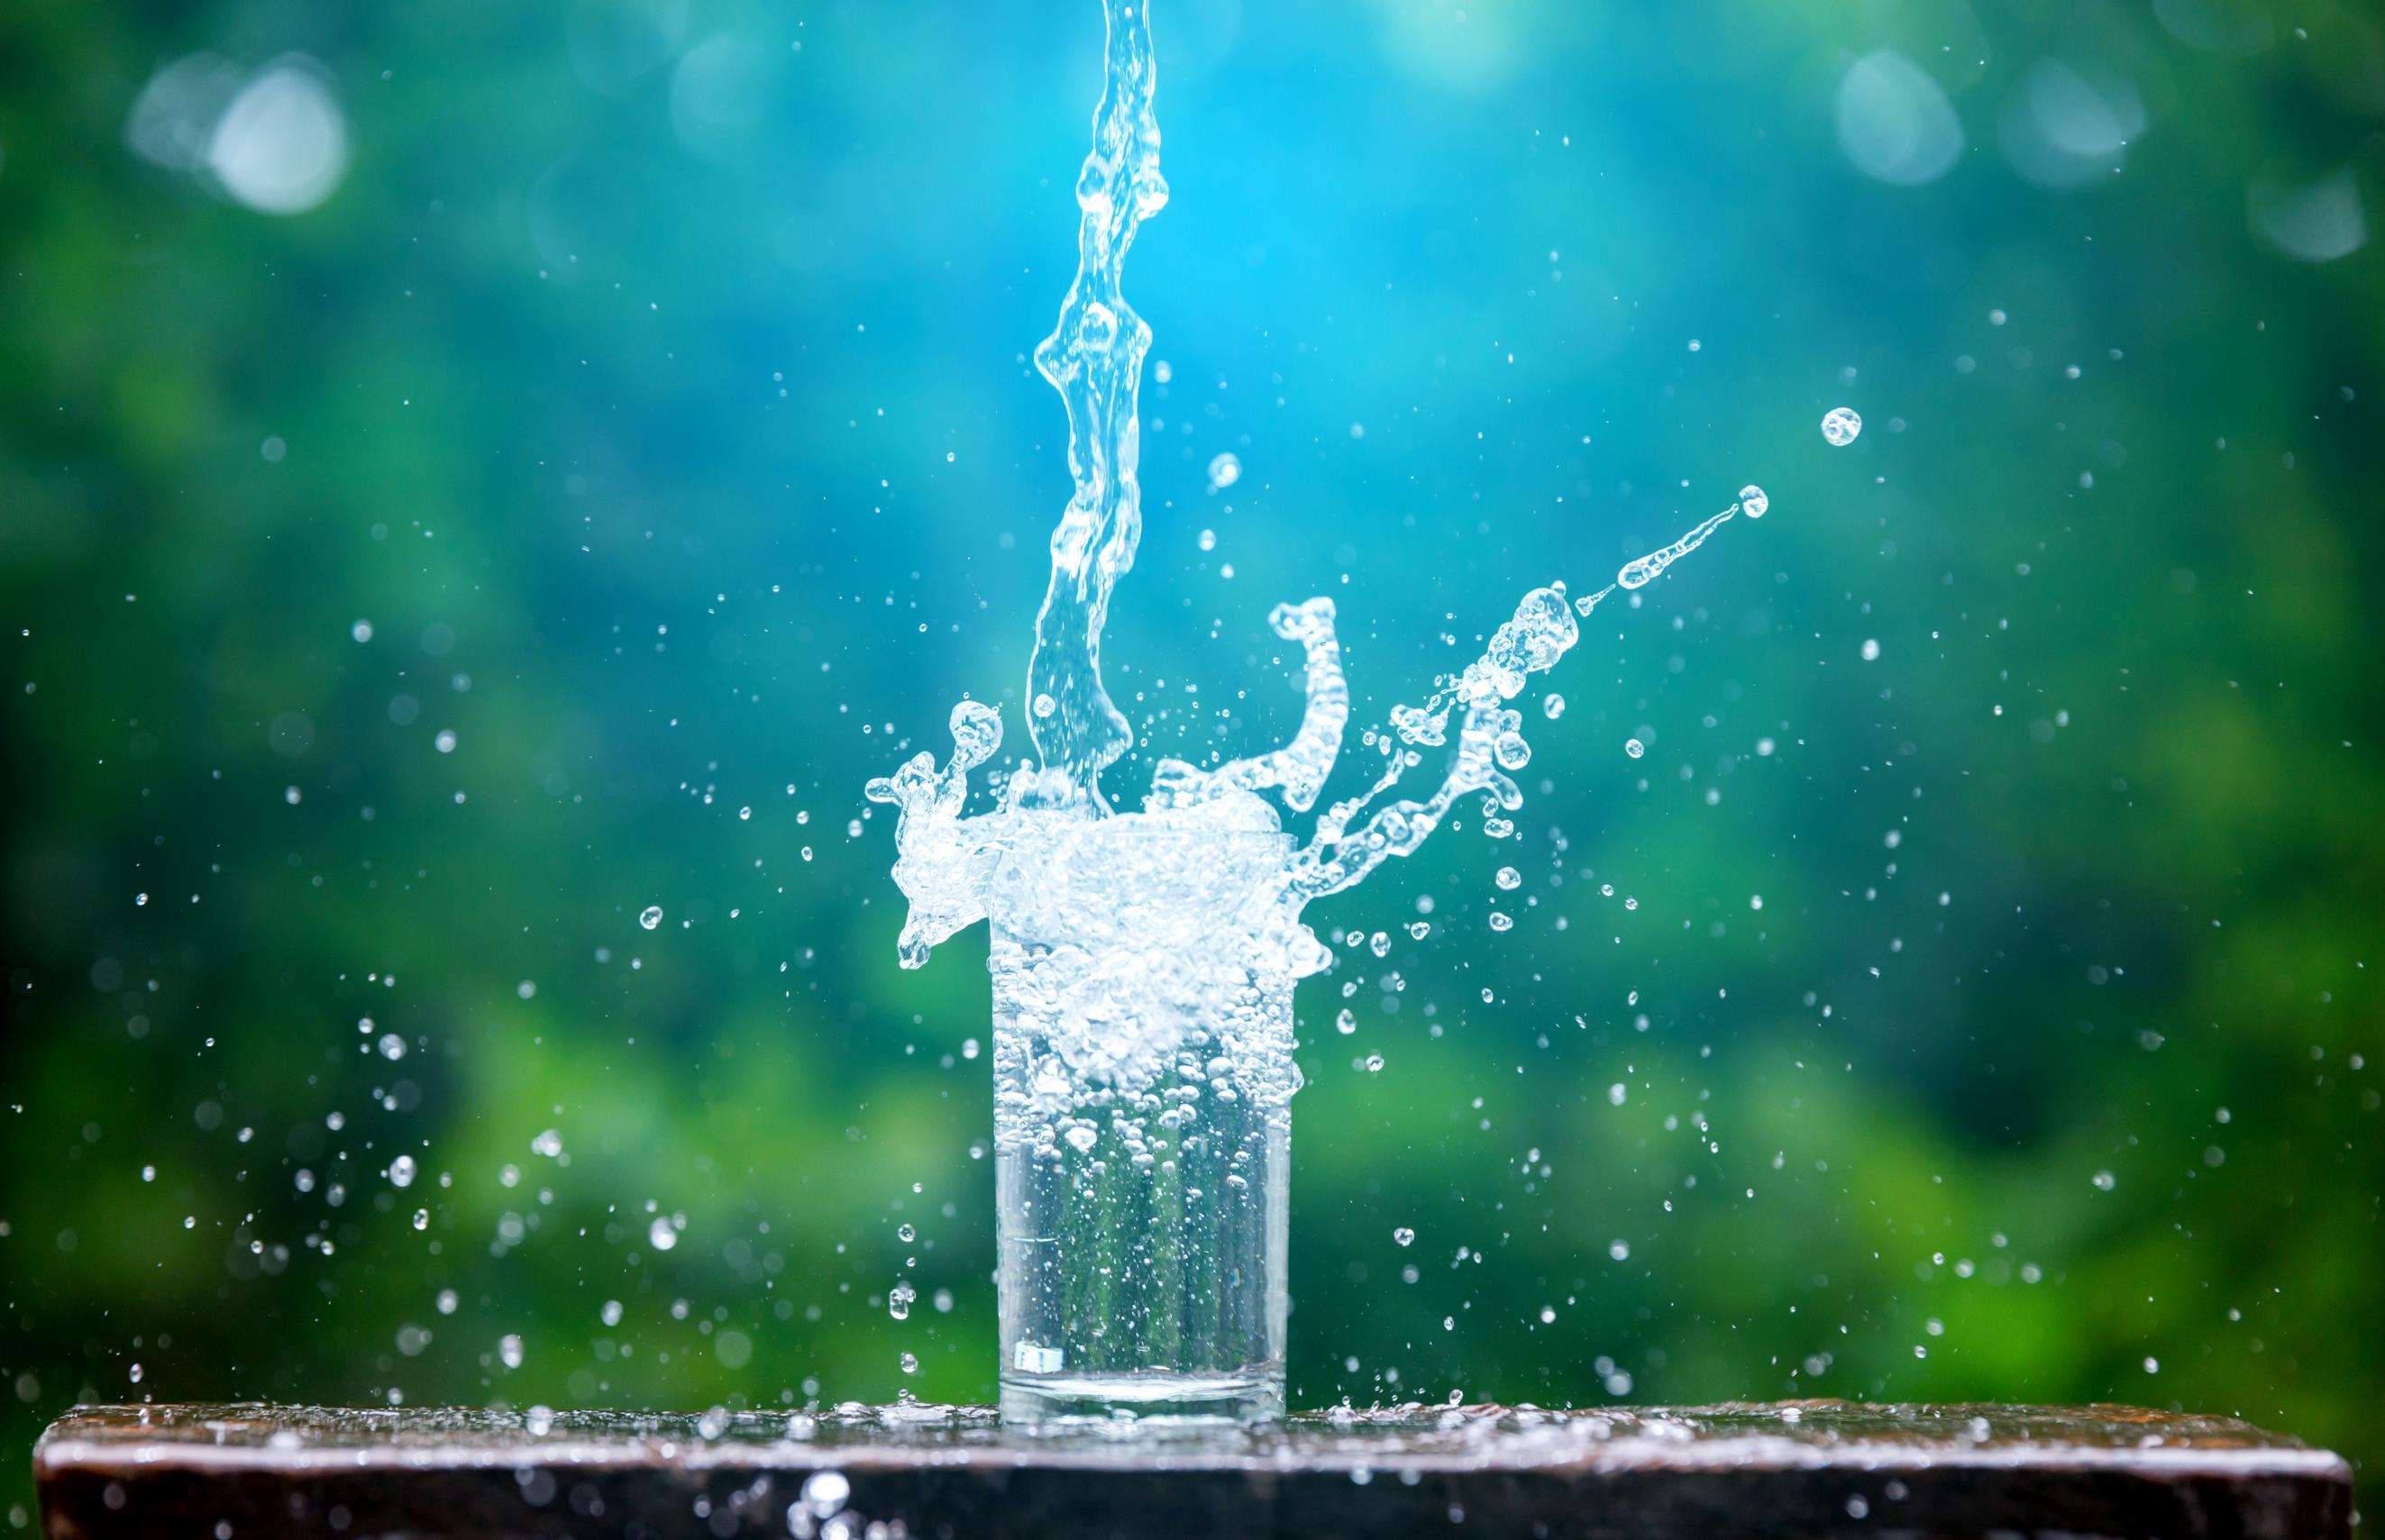 Un potomane peut boire jusqu'à 24 litres d'eau par jour. © Noon@photo, Adobe Stock